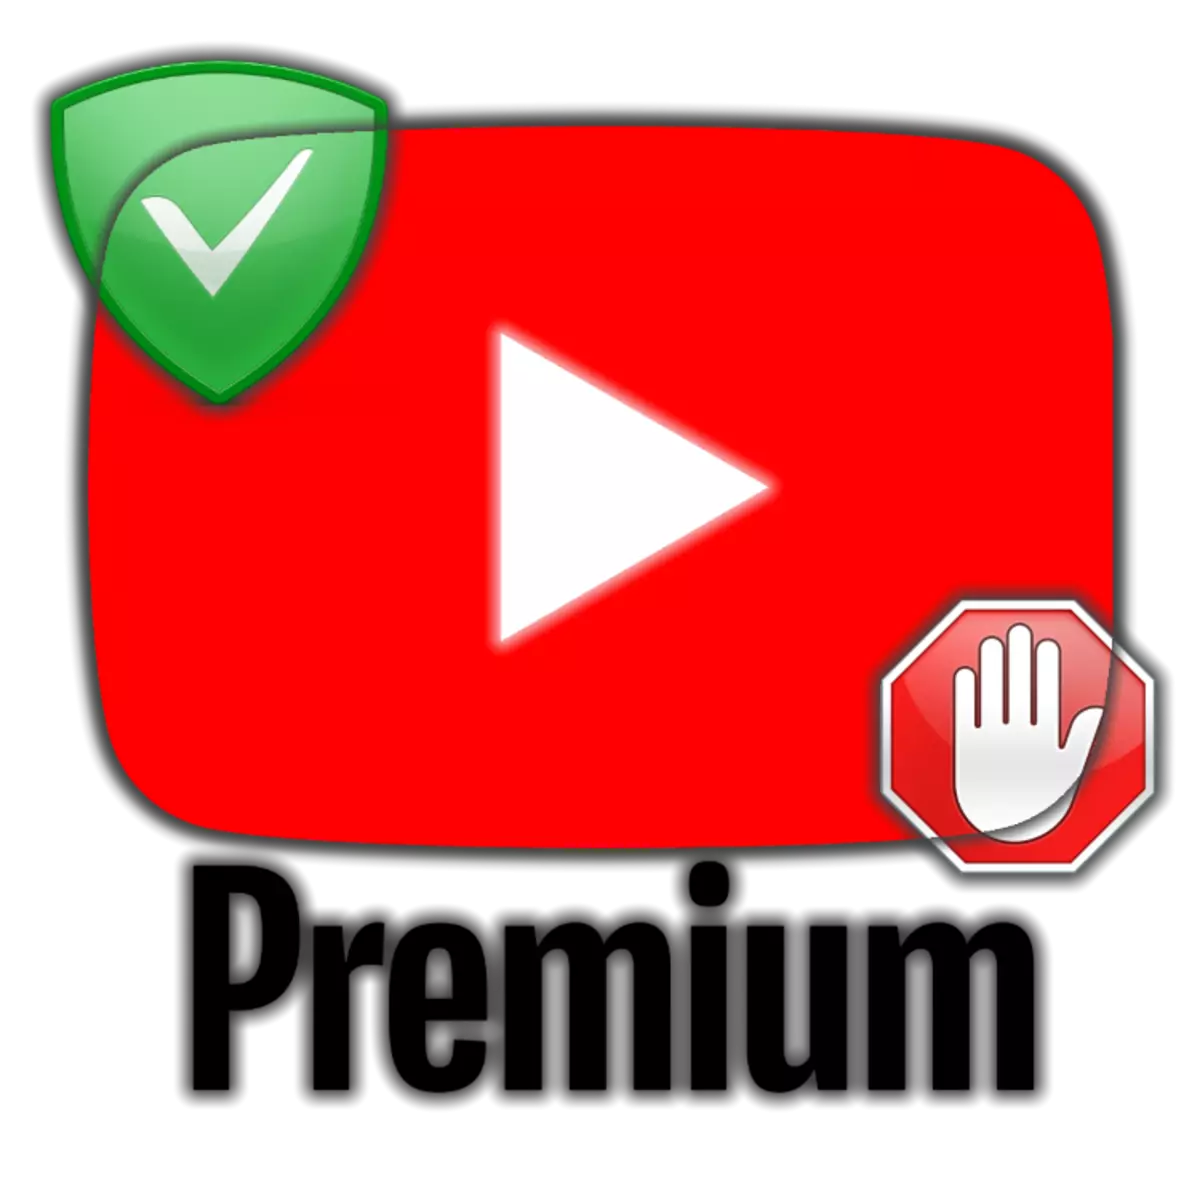 Kiel rigardi YouTube sen reklamado